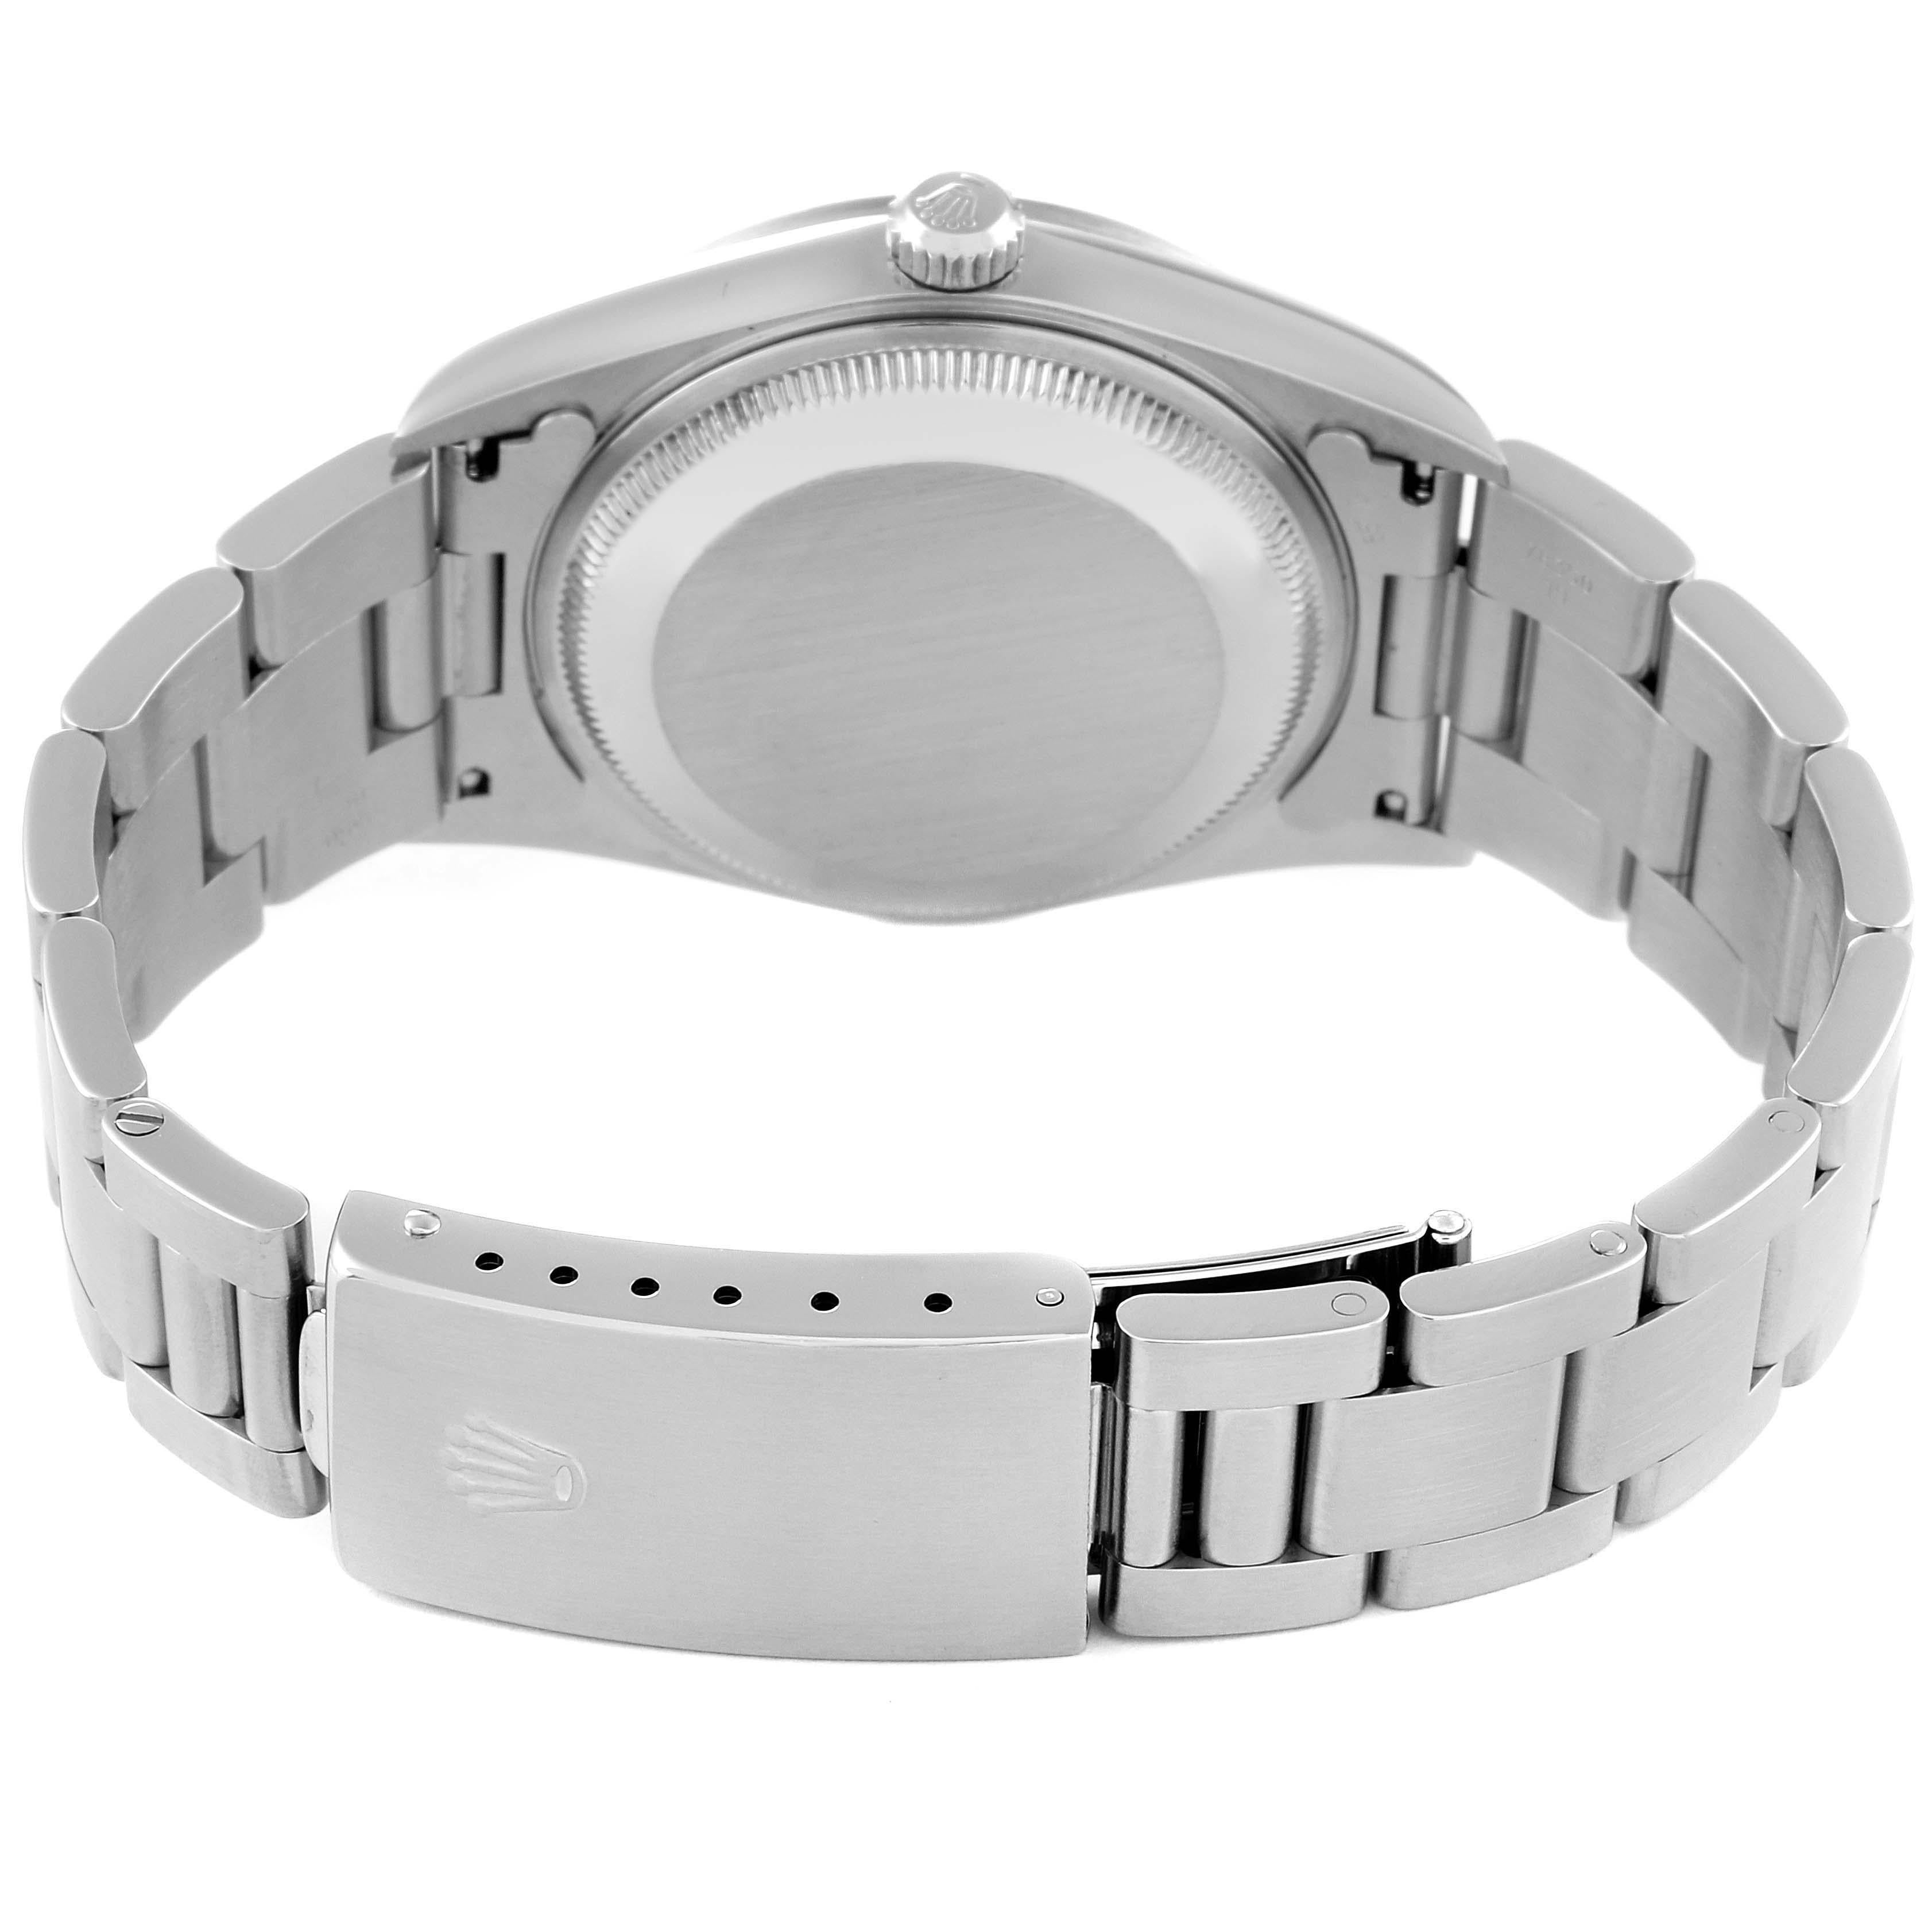 Rolex Date Black Dial Oyster Bracelet Steel Mens Watch 15200 4